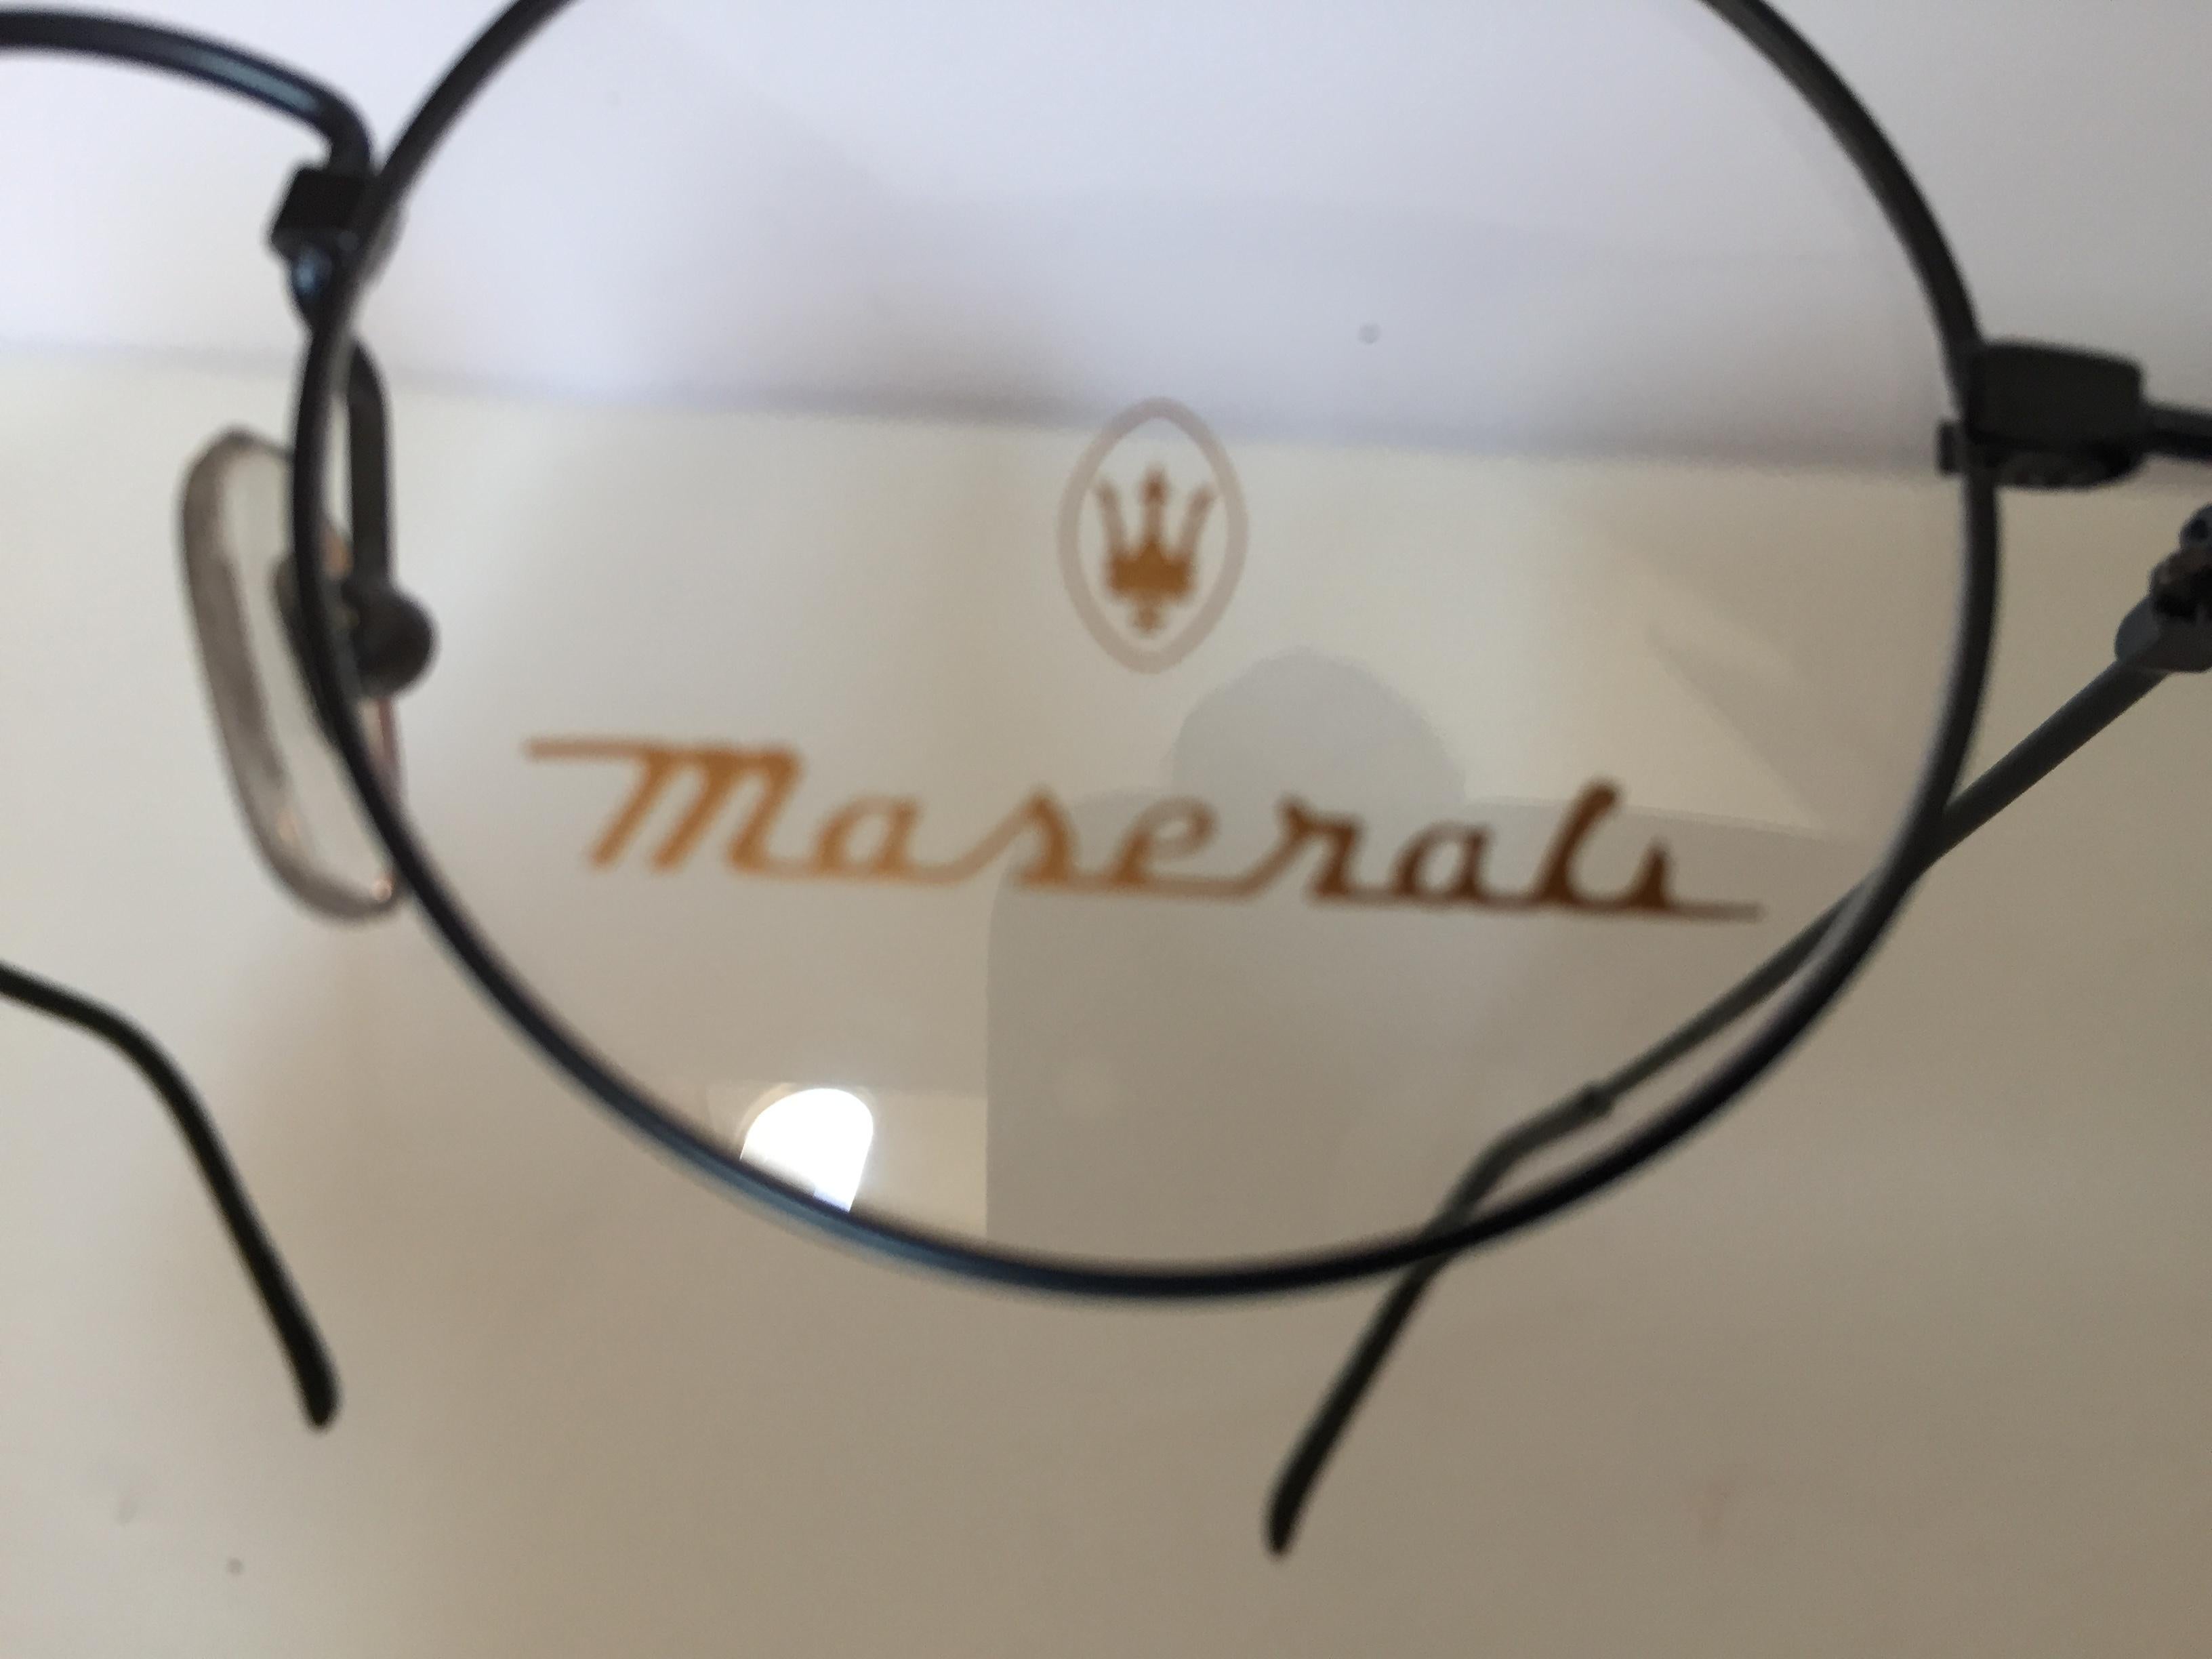 masarata eyewear